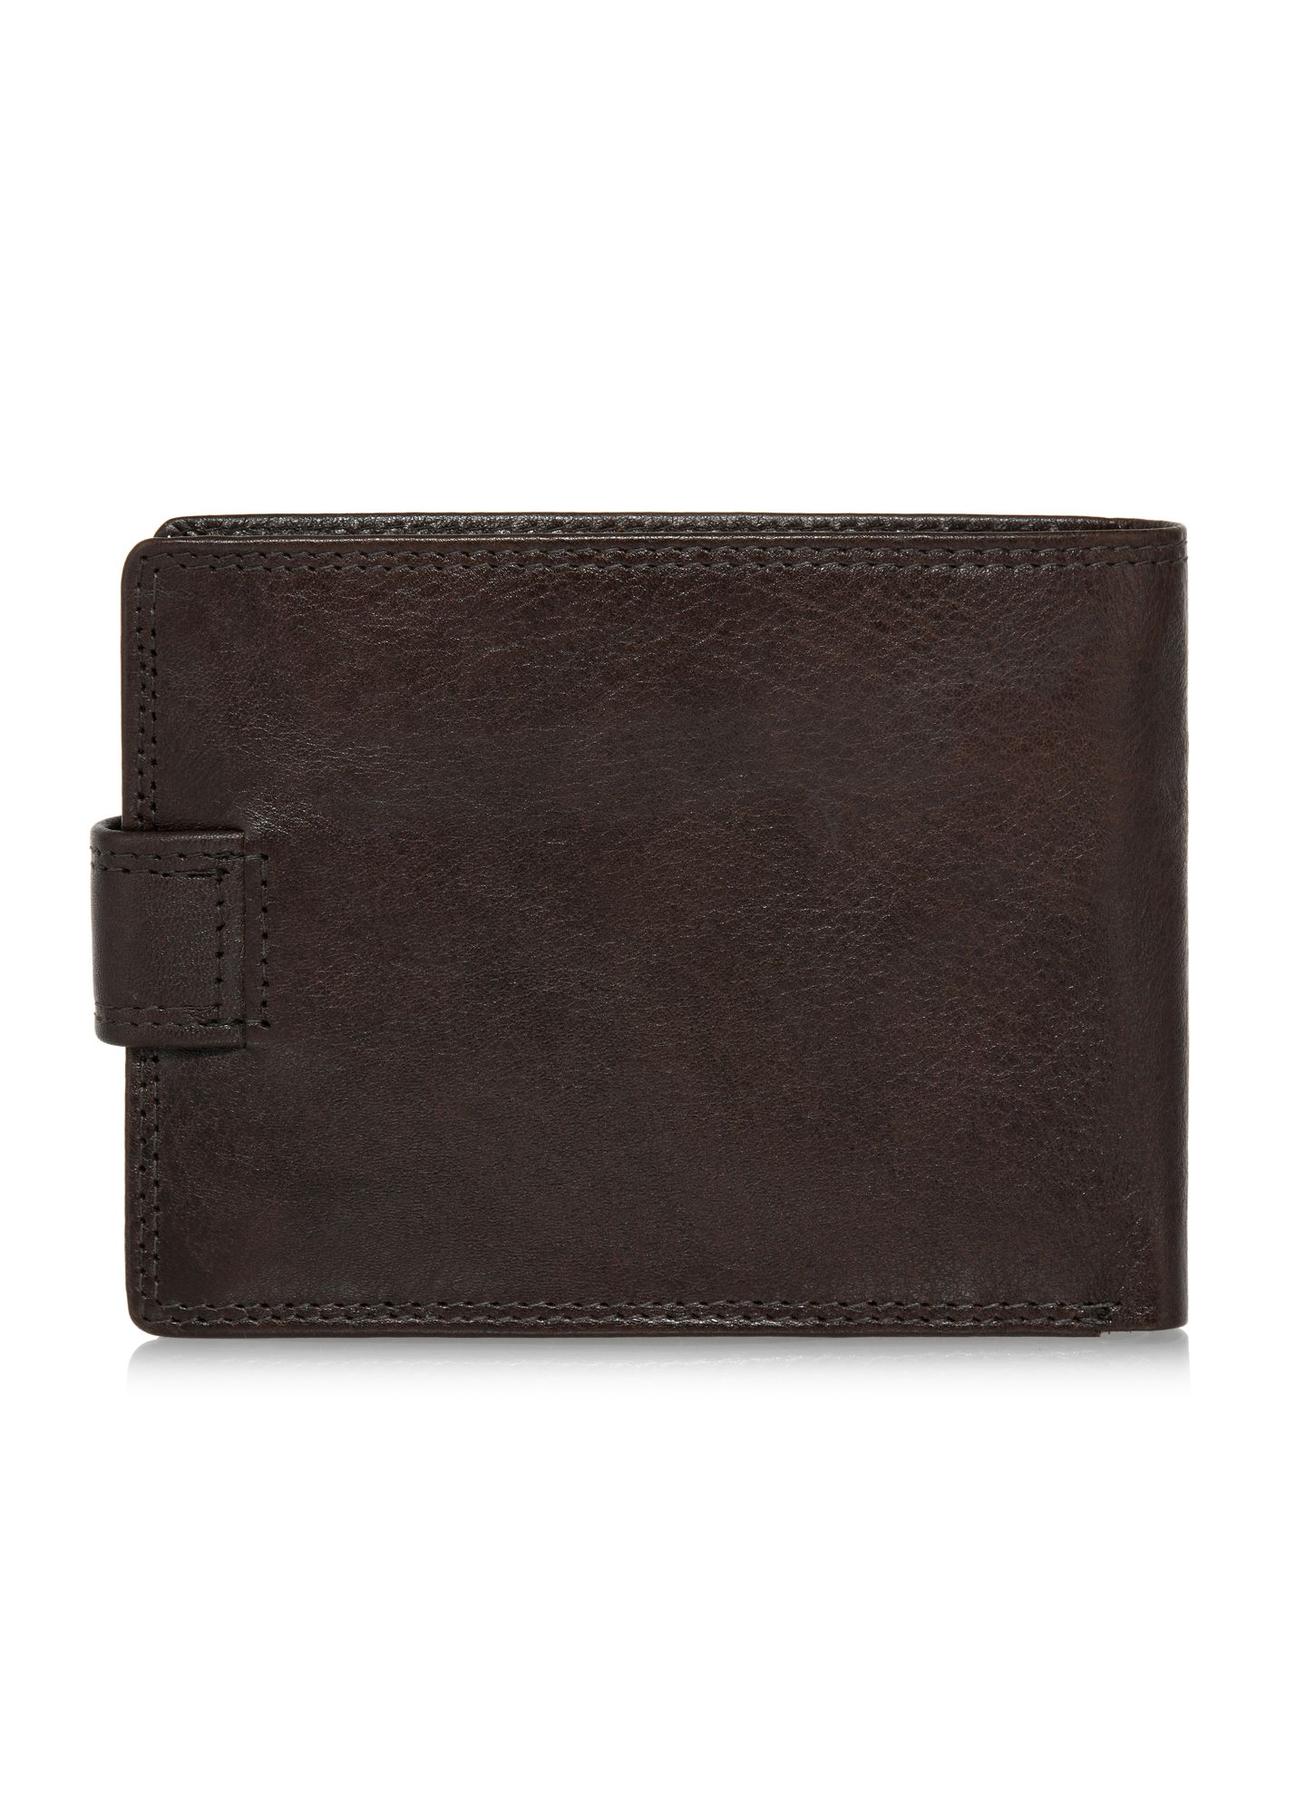 Skórzany zapinany brązowy portfel męski PORMS-0606-89(W24)